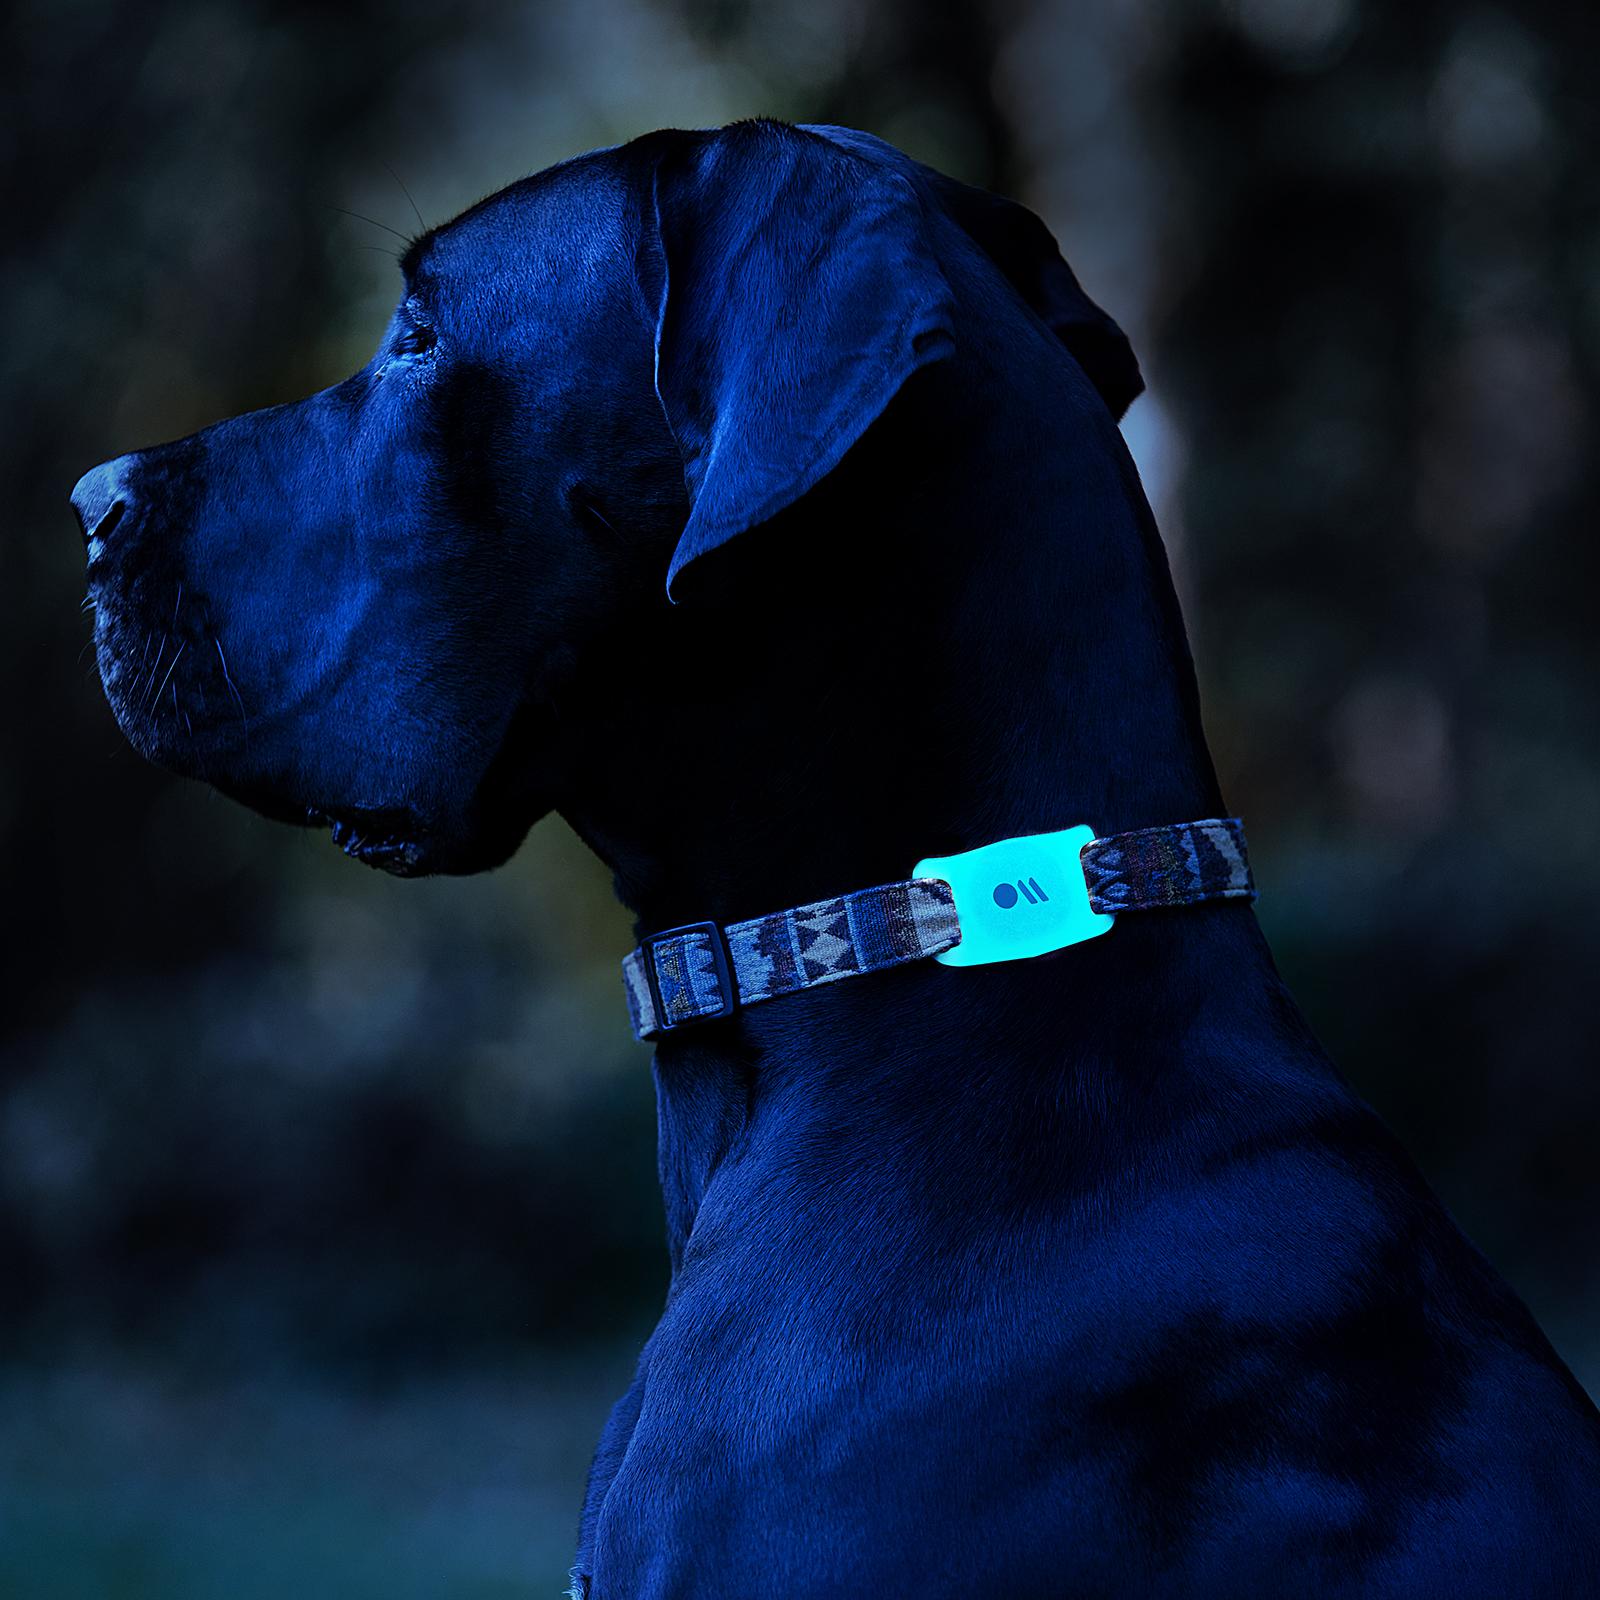 AirTags Leuchtendes CASE-MATE Halterung Hundehalsband für